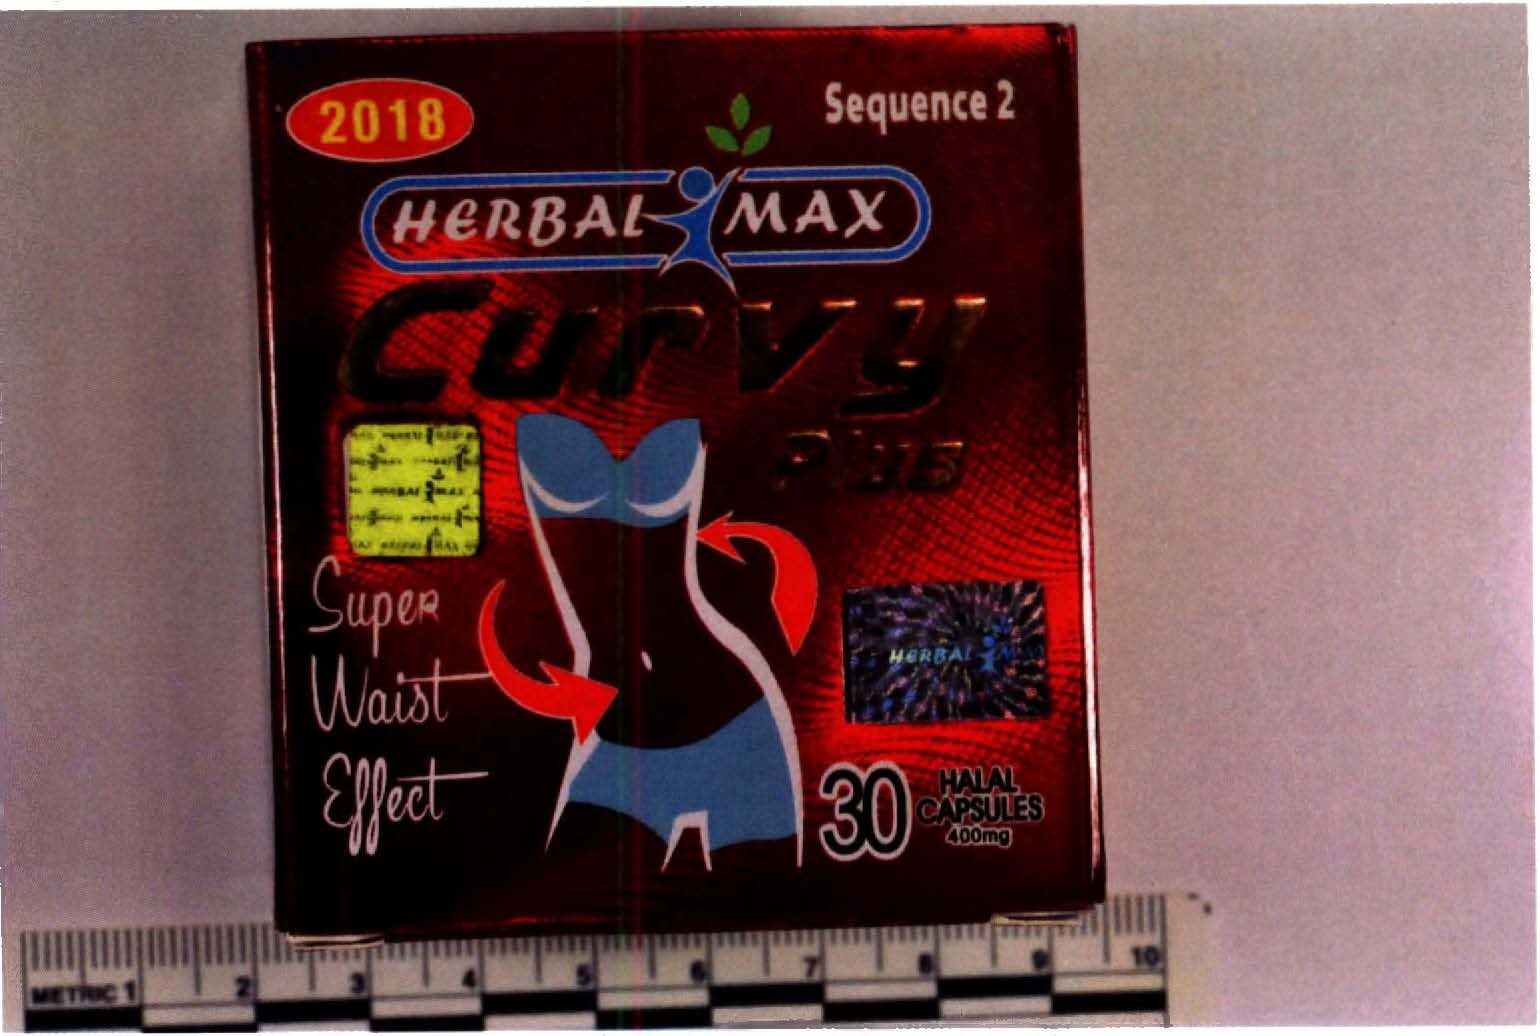 Billede af det ulovlige produkt: Herbal Max Curvy Plus